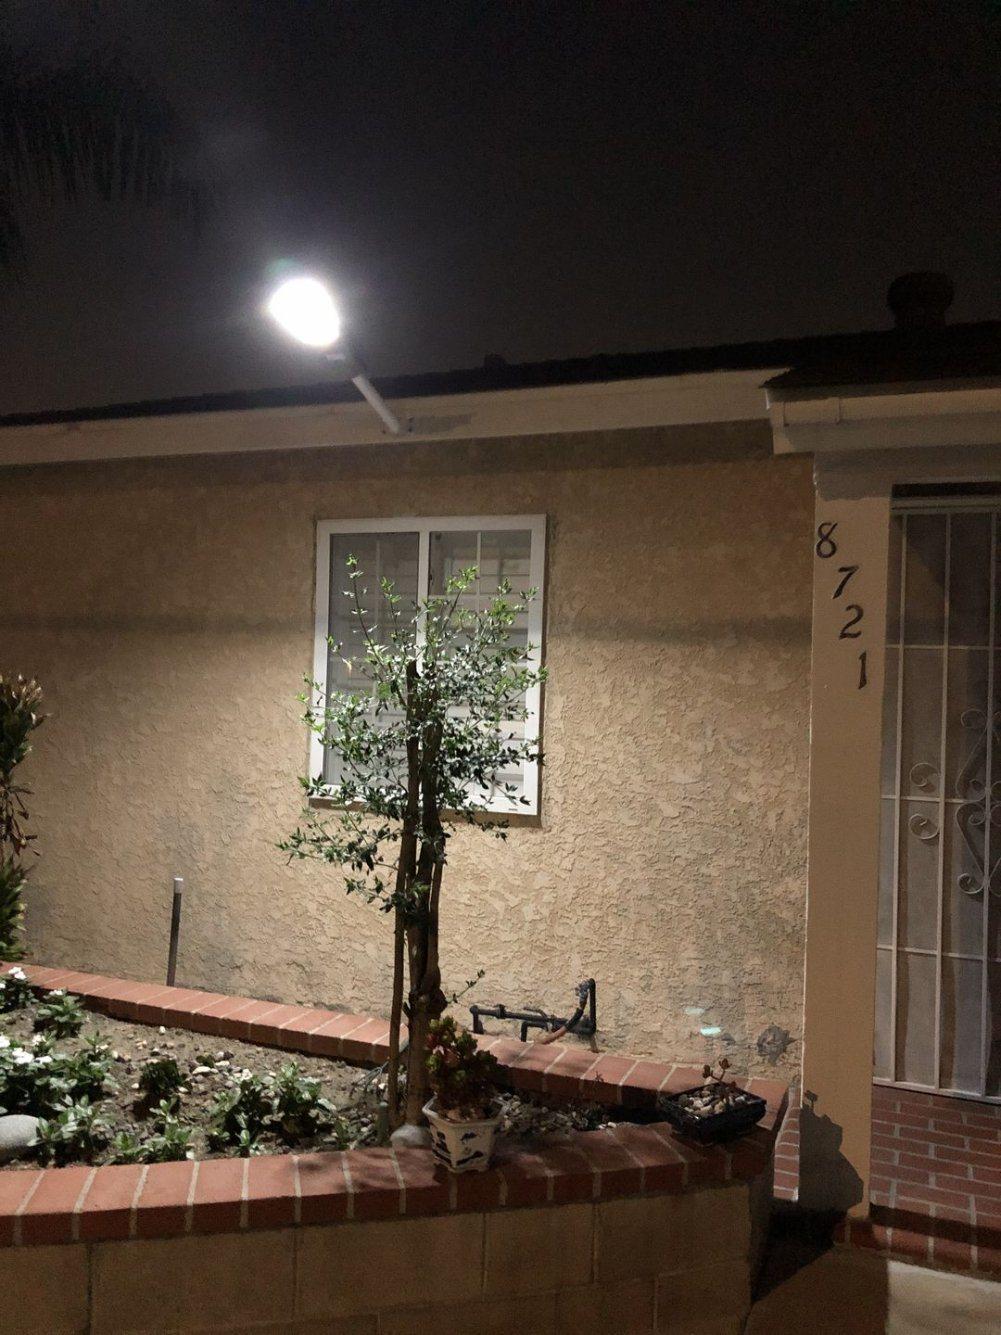 Super Bright LED 300W Solar Street Light for Garden Outdoor